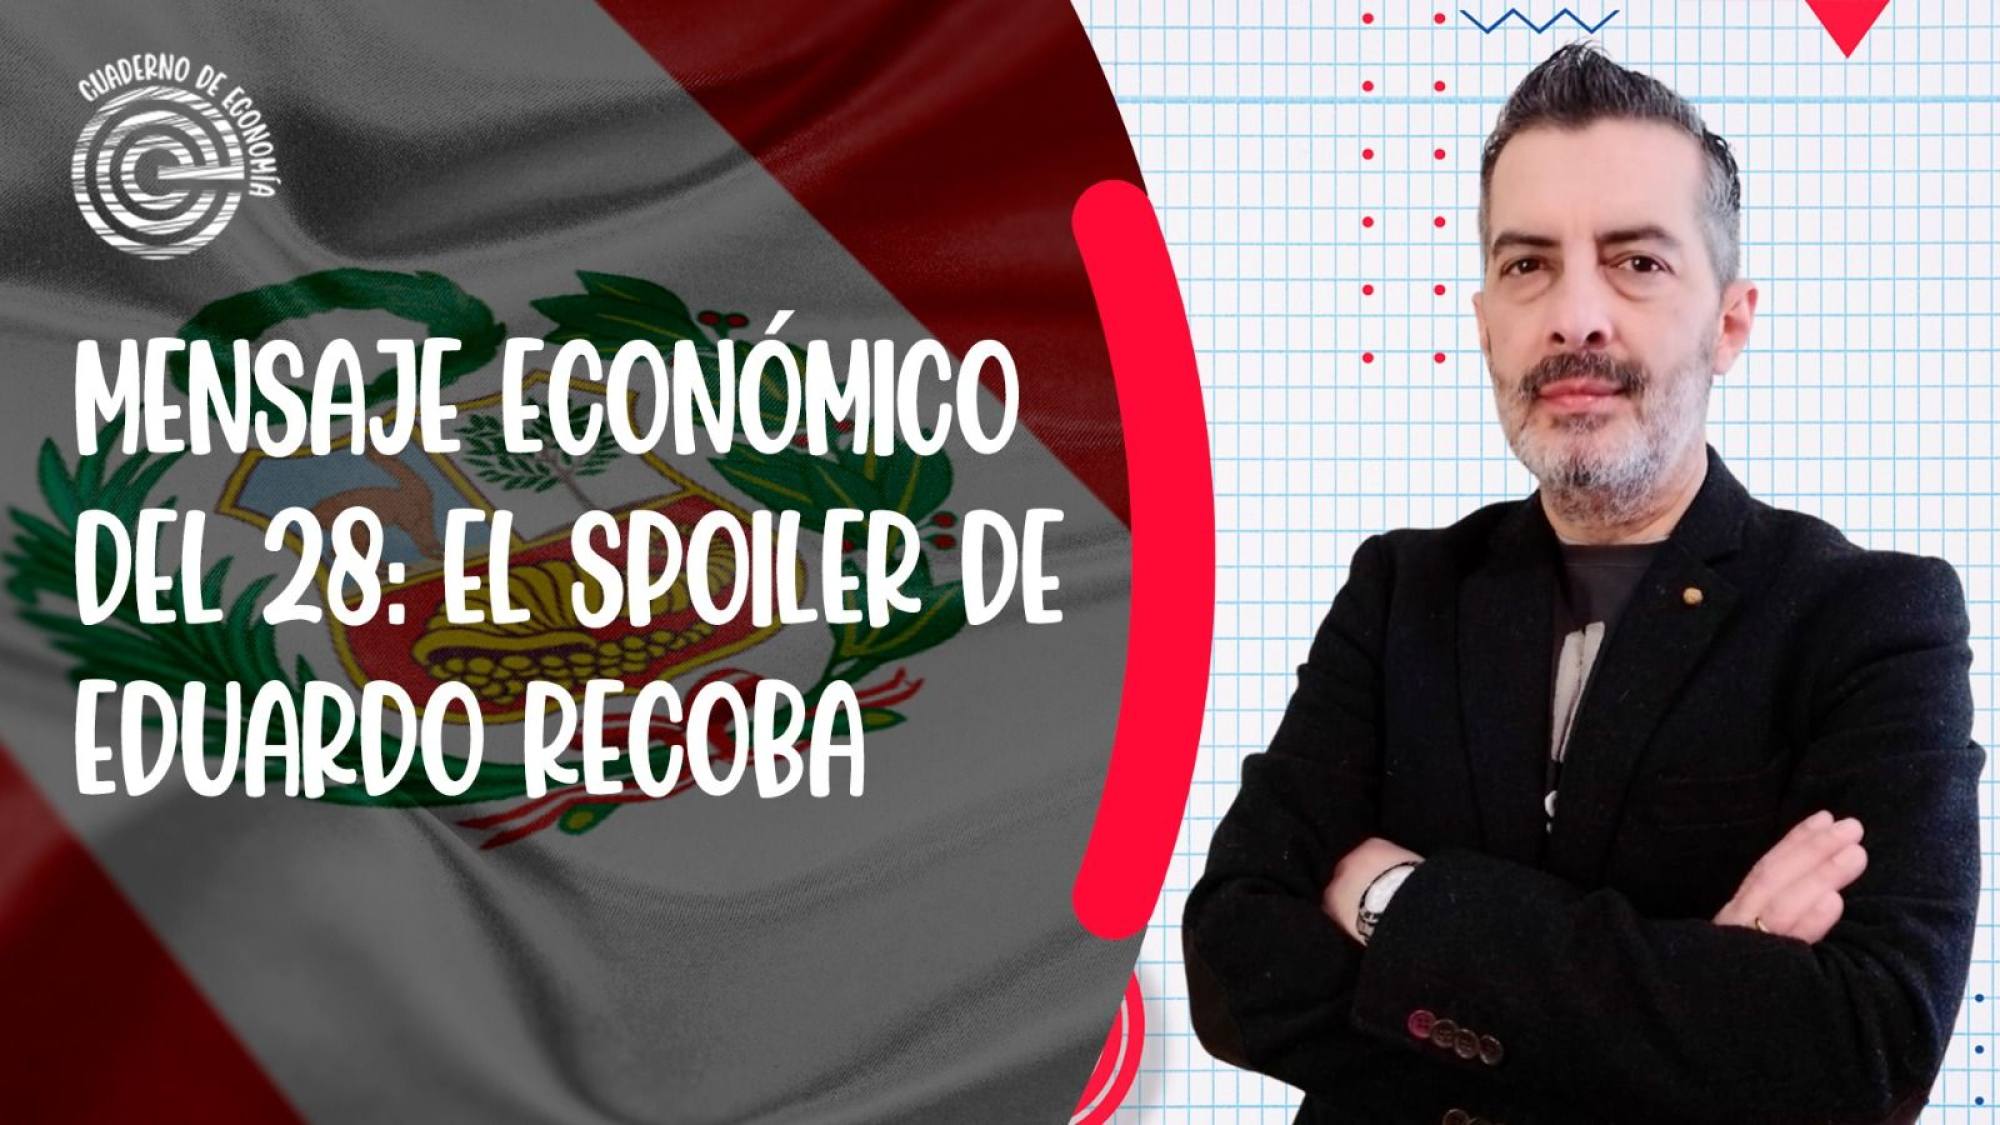 Mensaje económico del 28: el spoiler de Eduardo Recoba, Epicentro TV